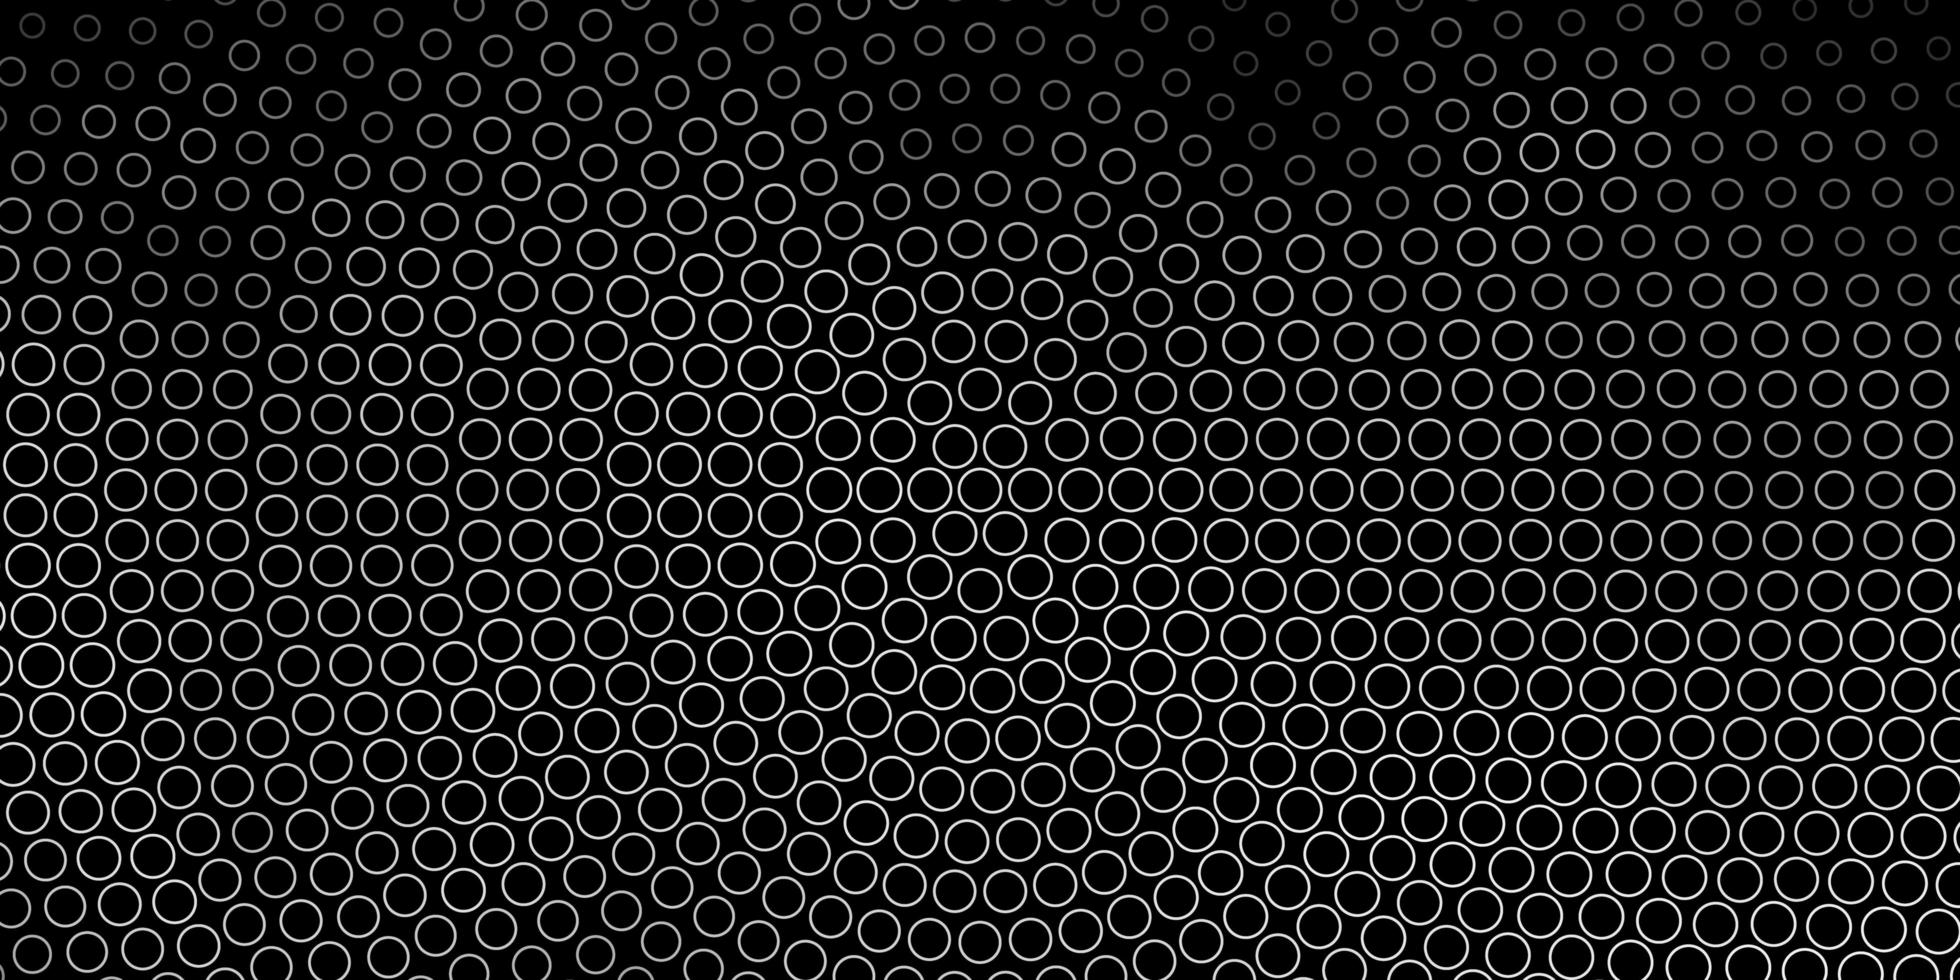 textura de vetor cinza escuro com círculos.